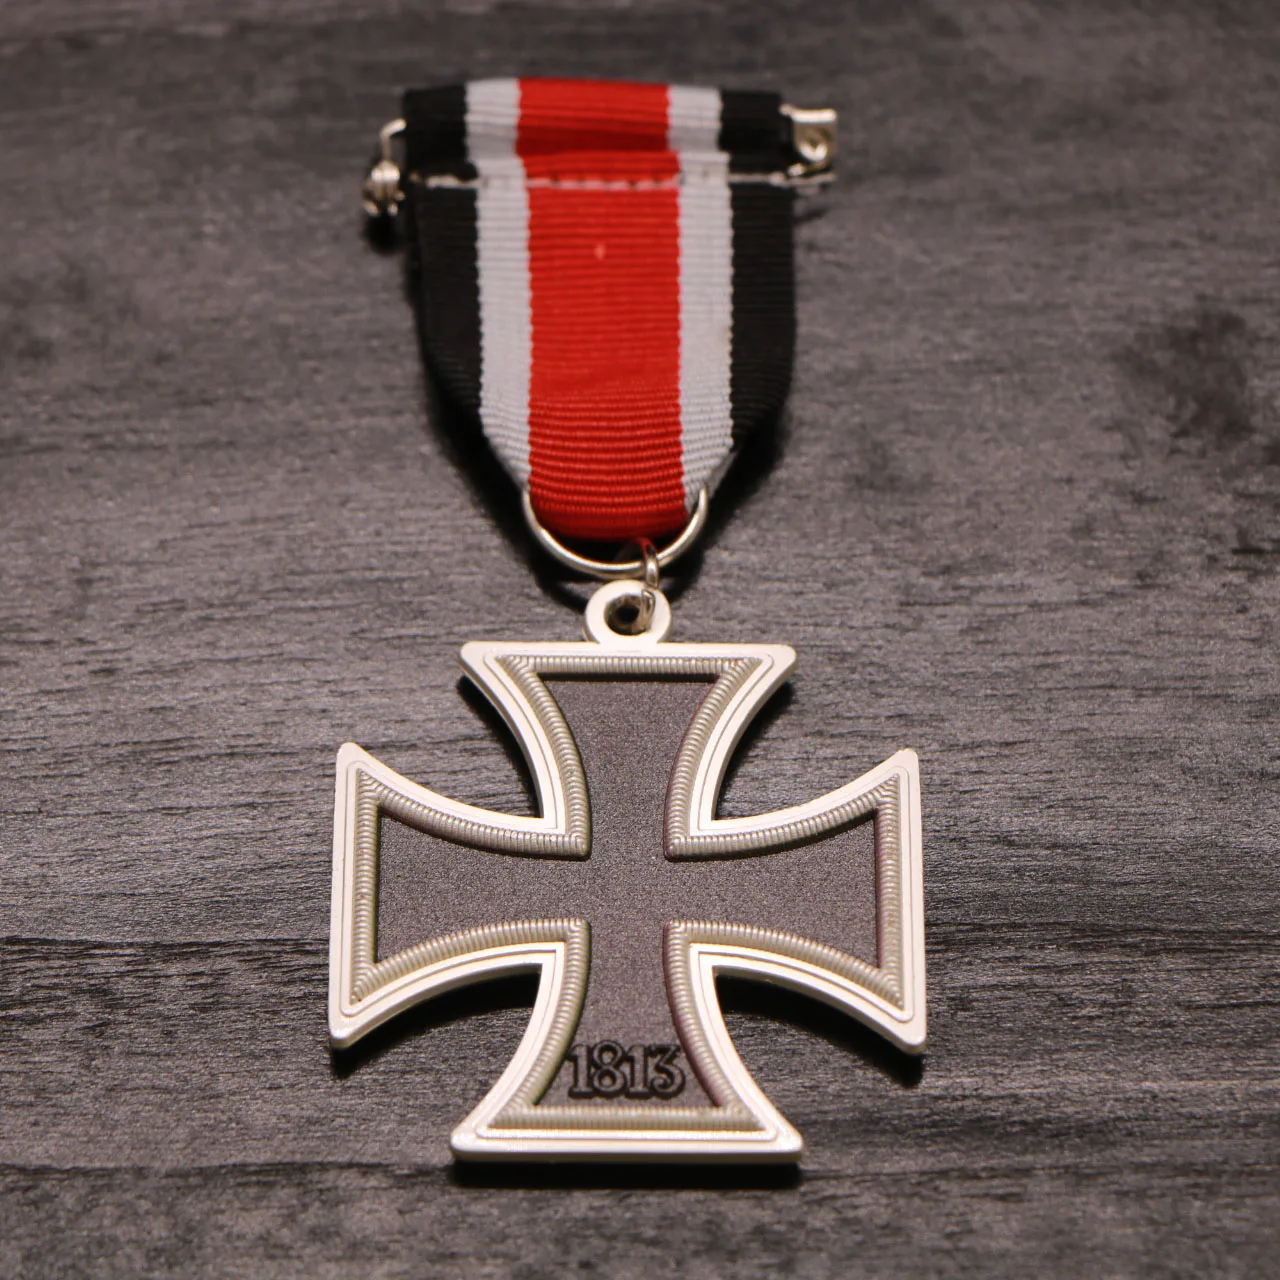 3 шт./лот, Германия, 1813, Железный крест+ 1870, Железный крест+ 1914, железный крест, 2 класса, военная медаль Пруссии